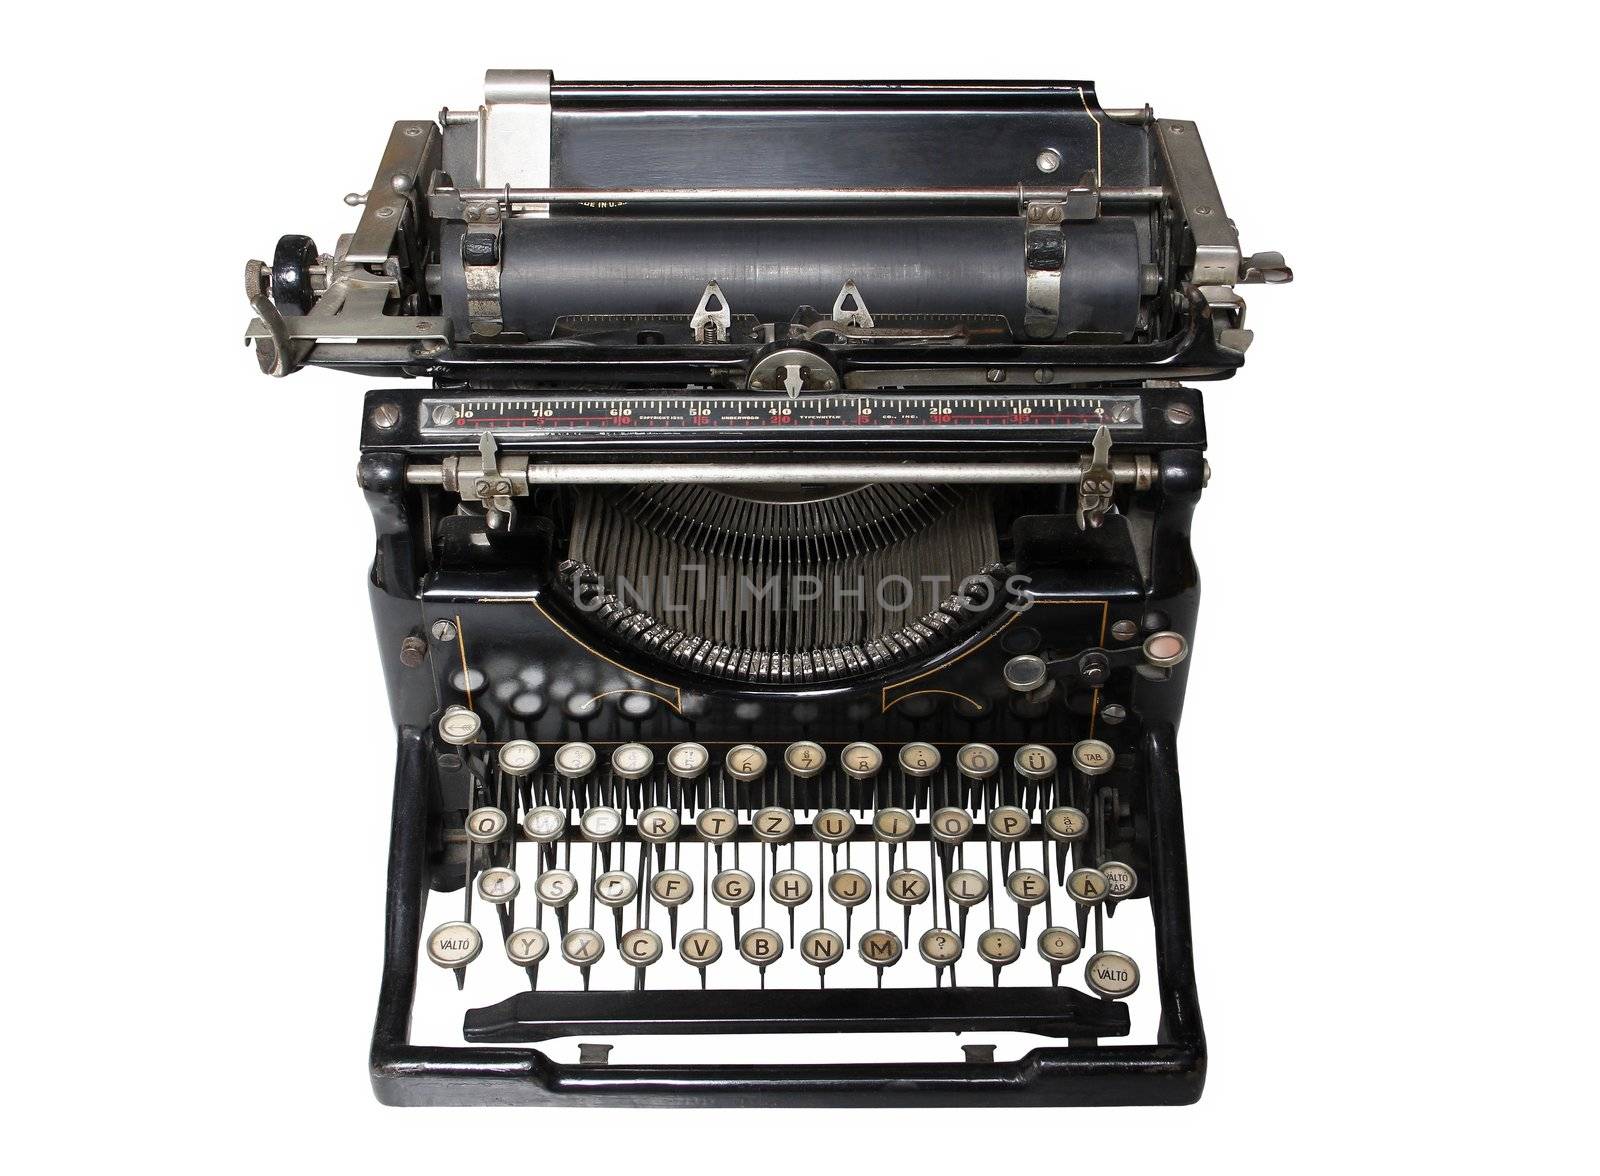 Old worn black metal typewriter.